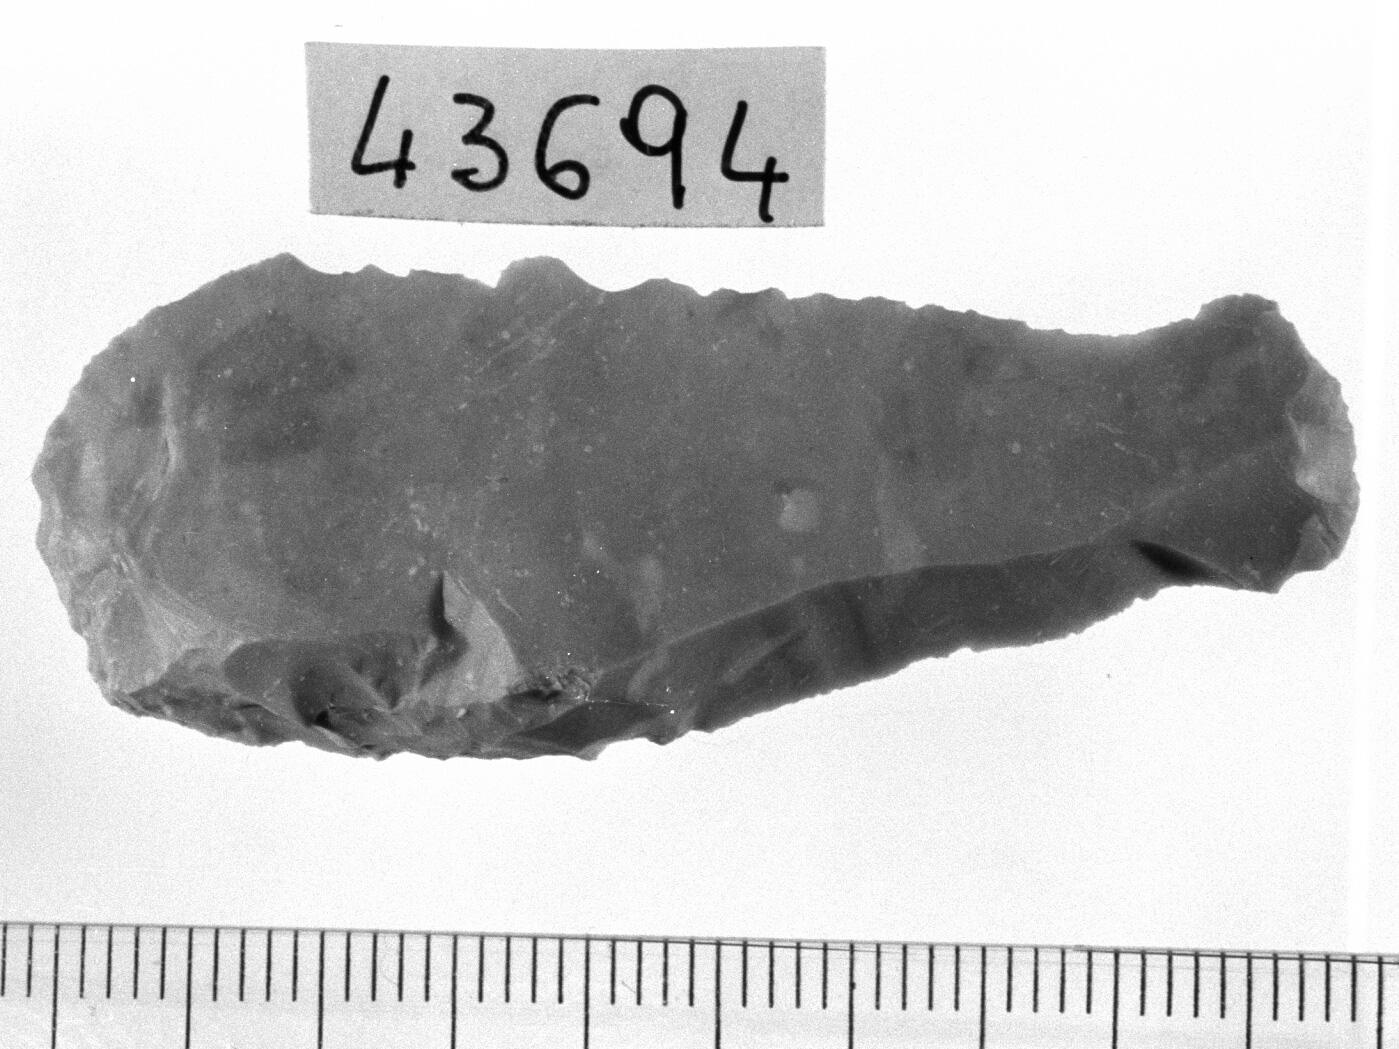 grattatoio frontale lungo - Epigravettiano (Paleolitico superiore)